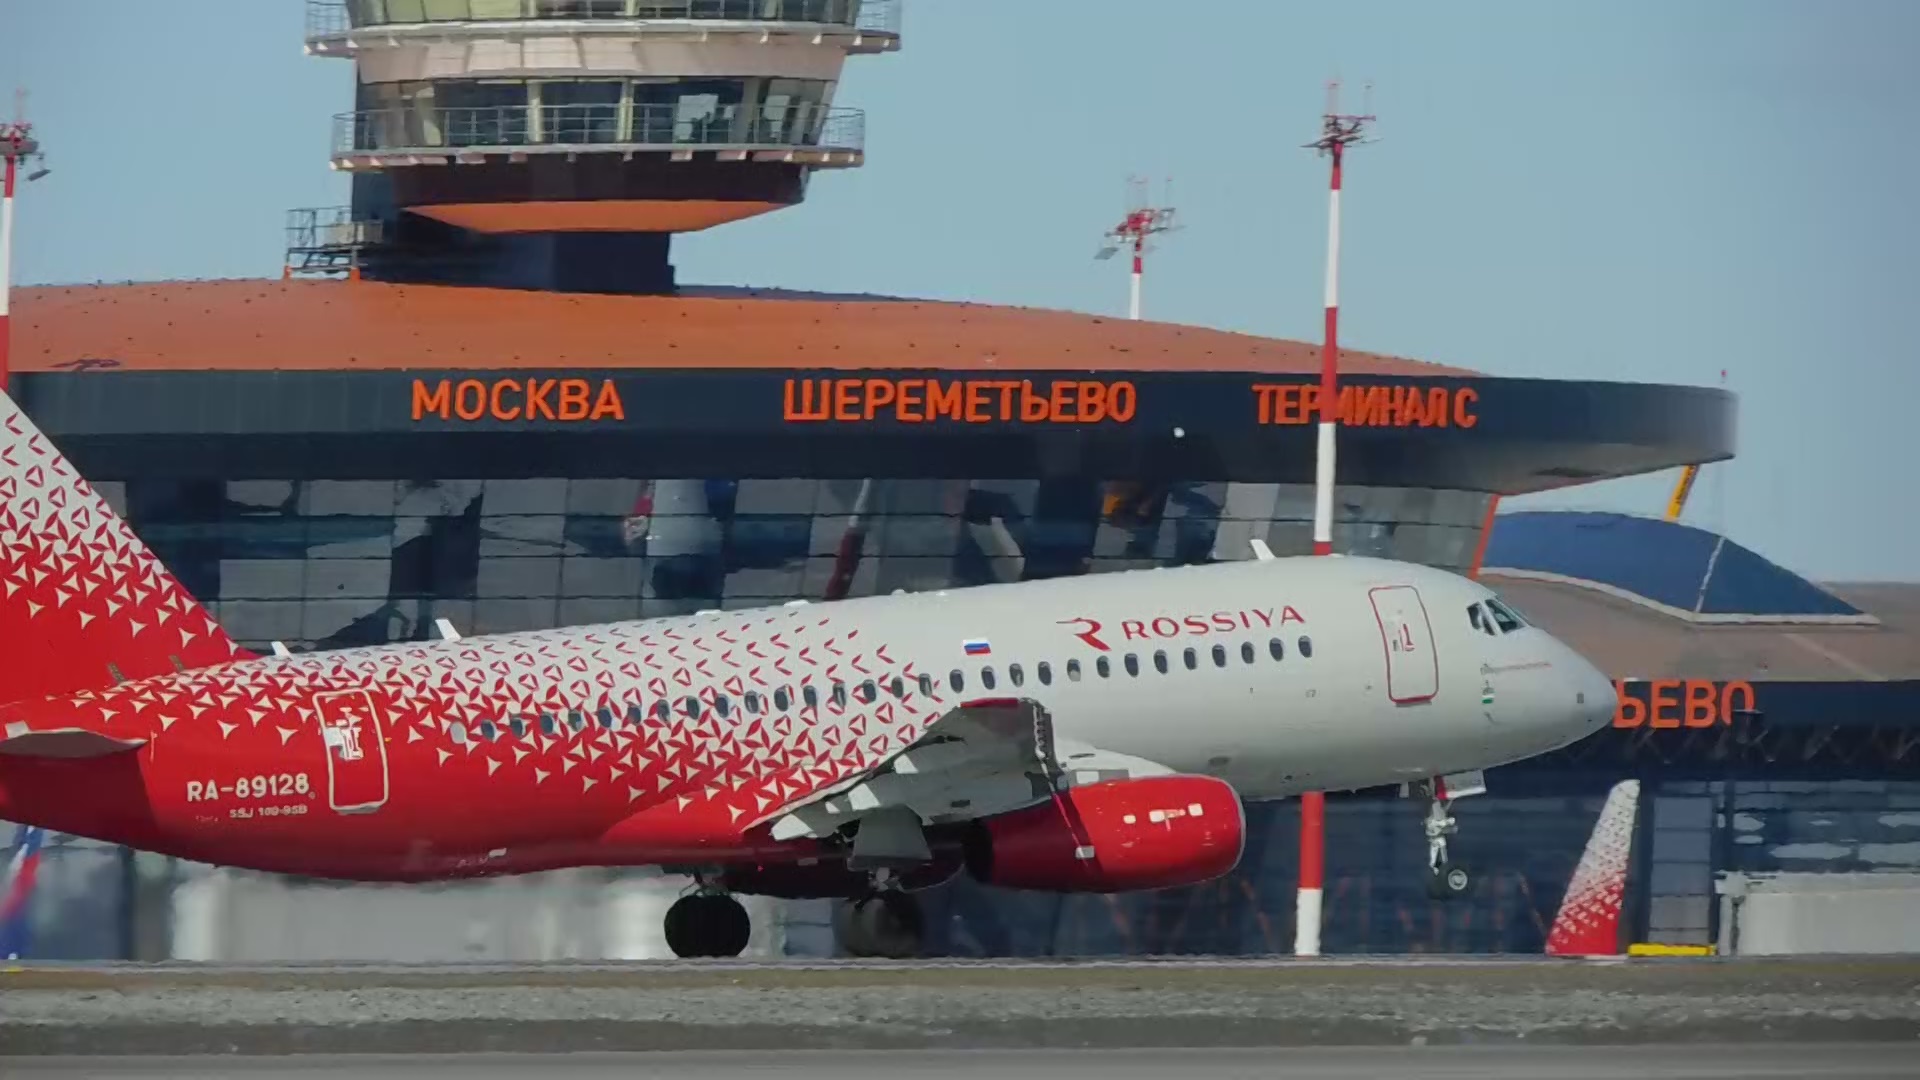 Москва шереметьево самолеты